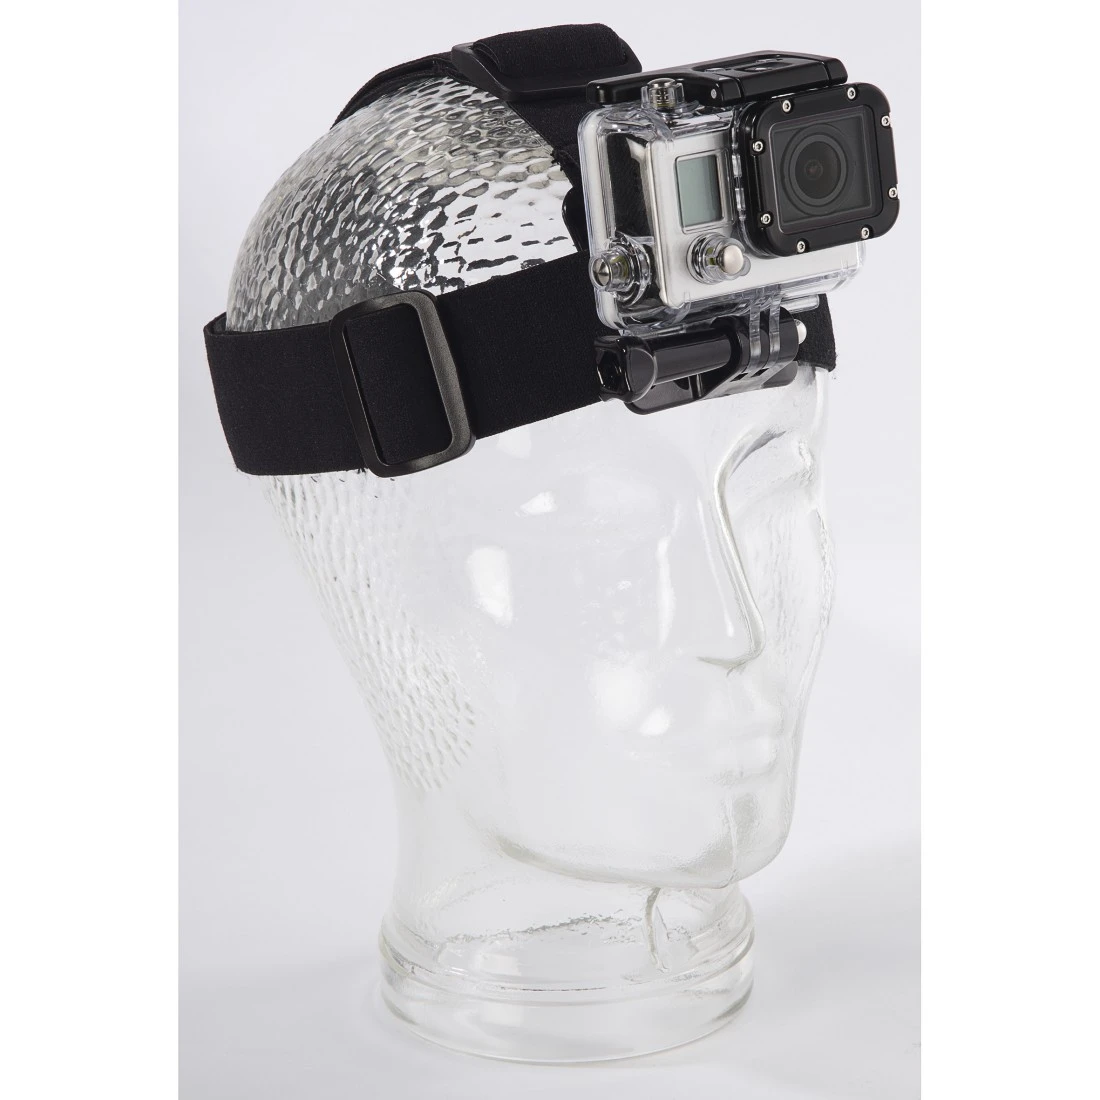 Support tête pour Caméra sportive GoPro avec bonnet ou sur un casque